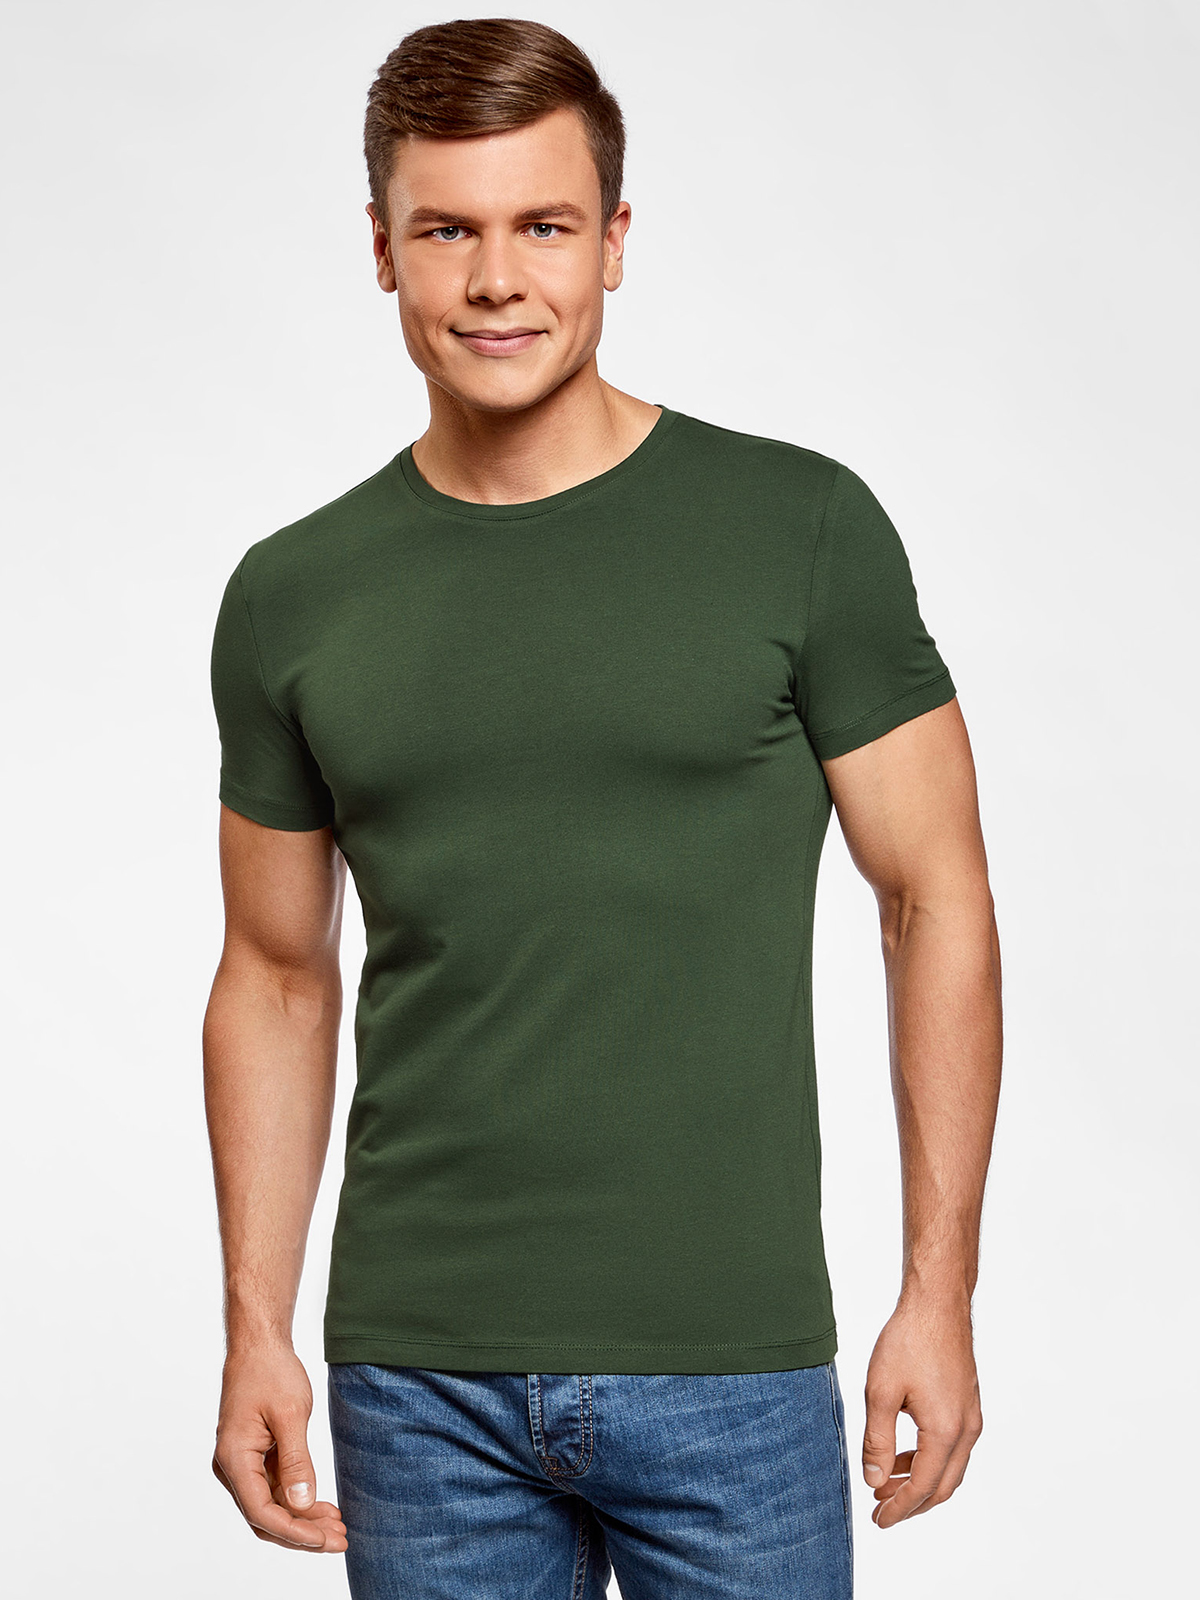 Где купить базовую футболку. Футболка мужская. Зеленая футболка мужская. Темно зеленая футболка мужская. Приталенная футболка мужская.